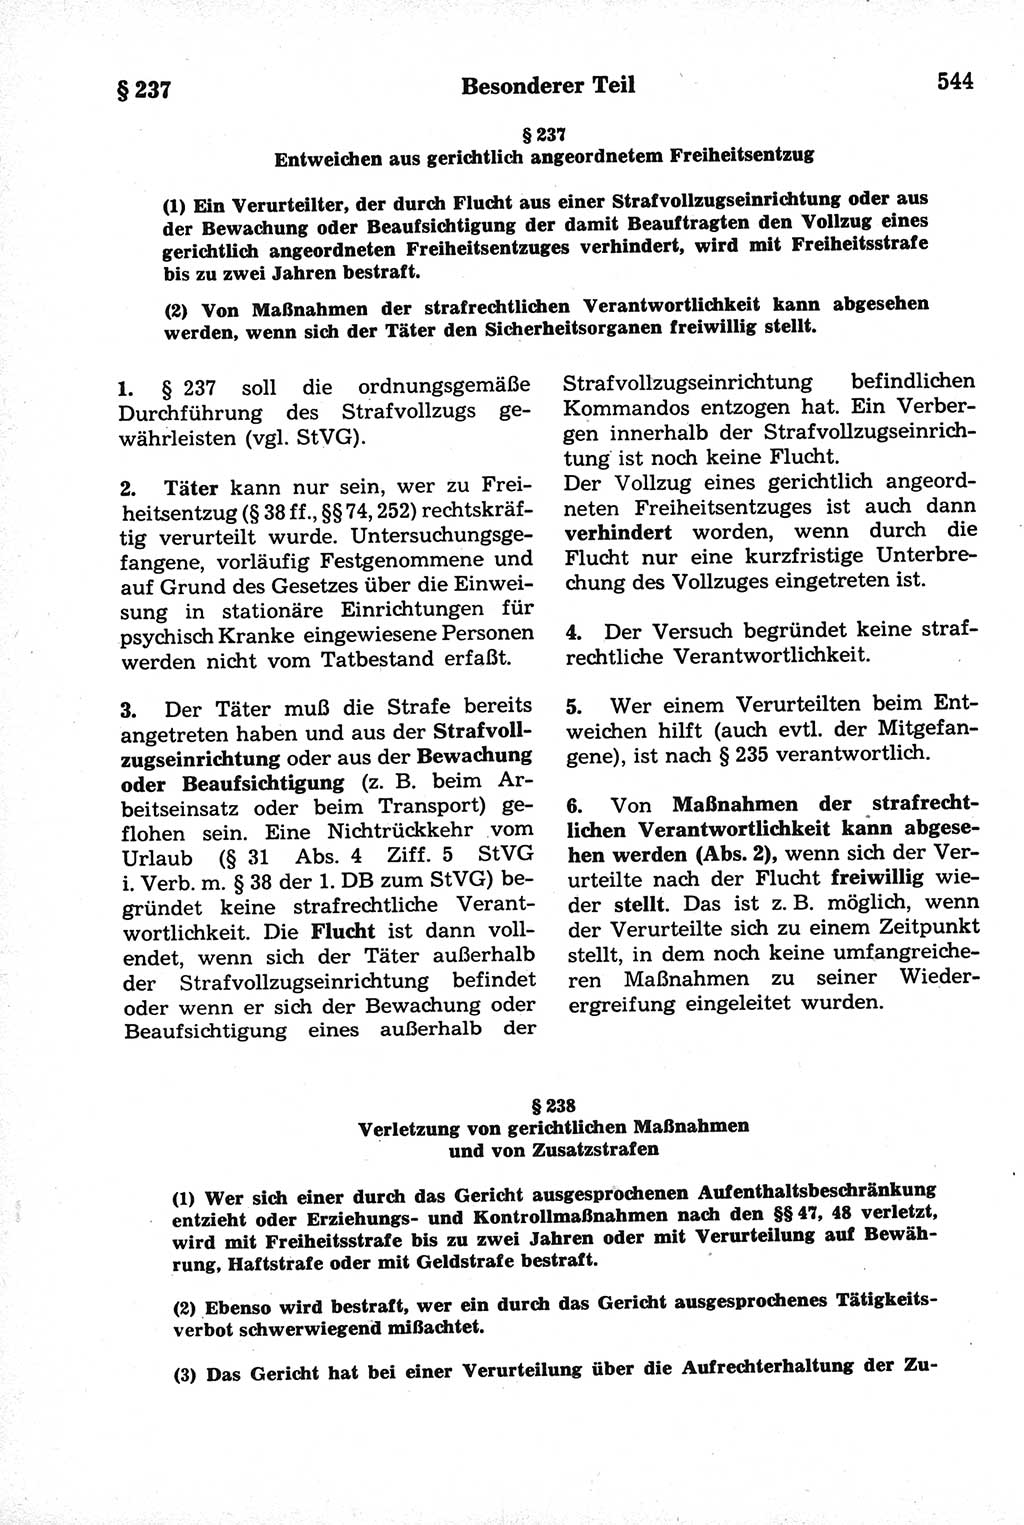 Strafrecht der Deutschen Demokratischen Republik (DDR), Kommentar zum Strafgesetzbuch (StGB) 1981, Seite 544 (Strafr. DDR Komm. StGB 1981, S. 544)